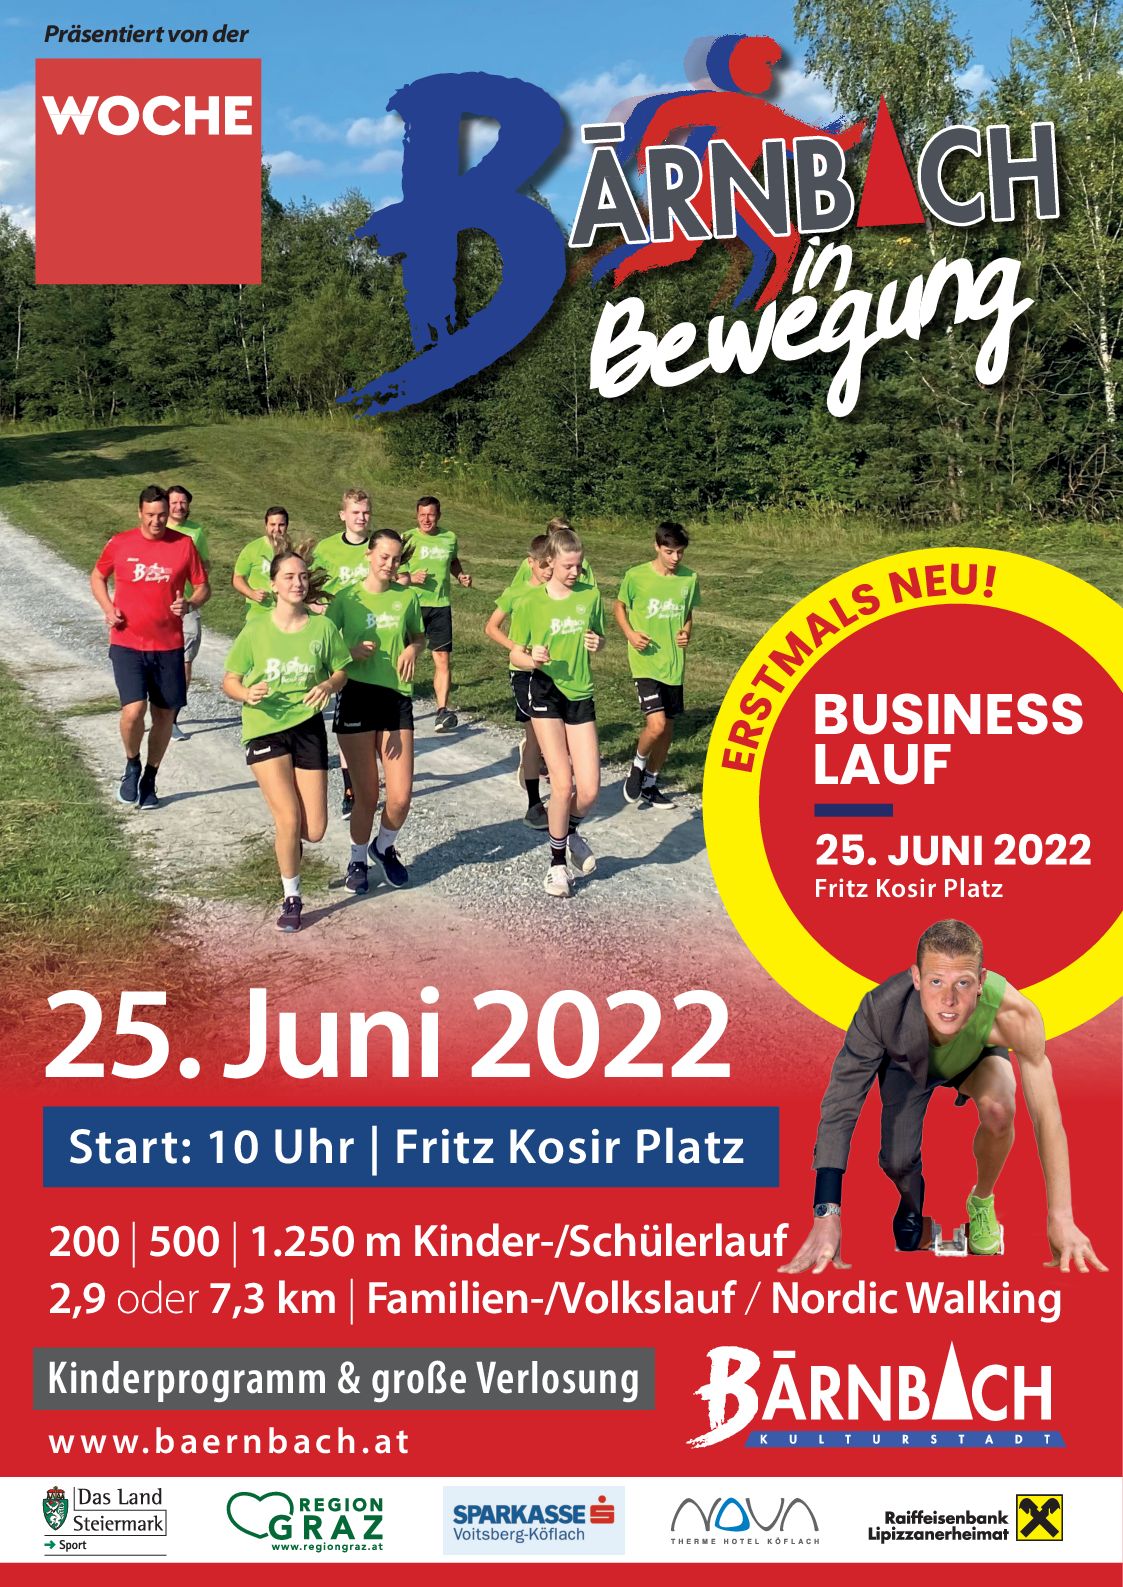 plakat bärnbach in bewegung 2022 mit businesslauf